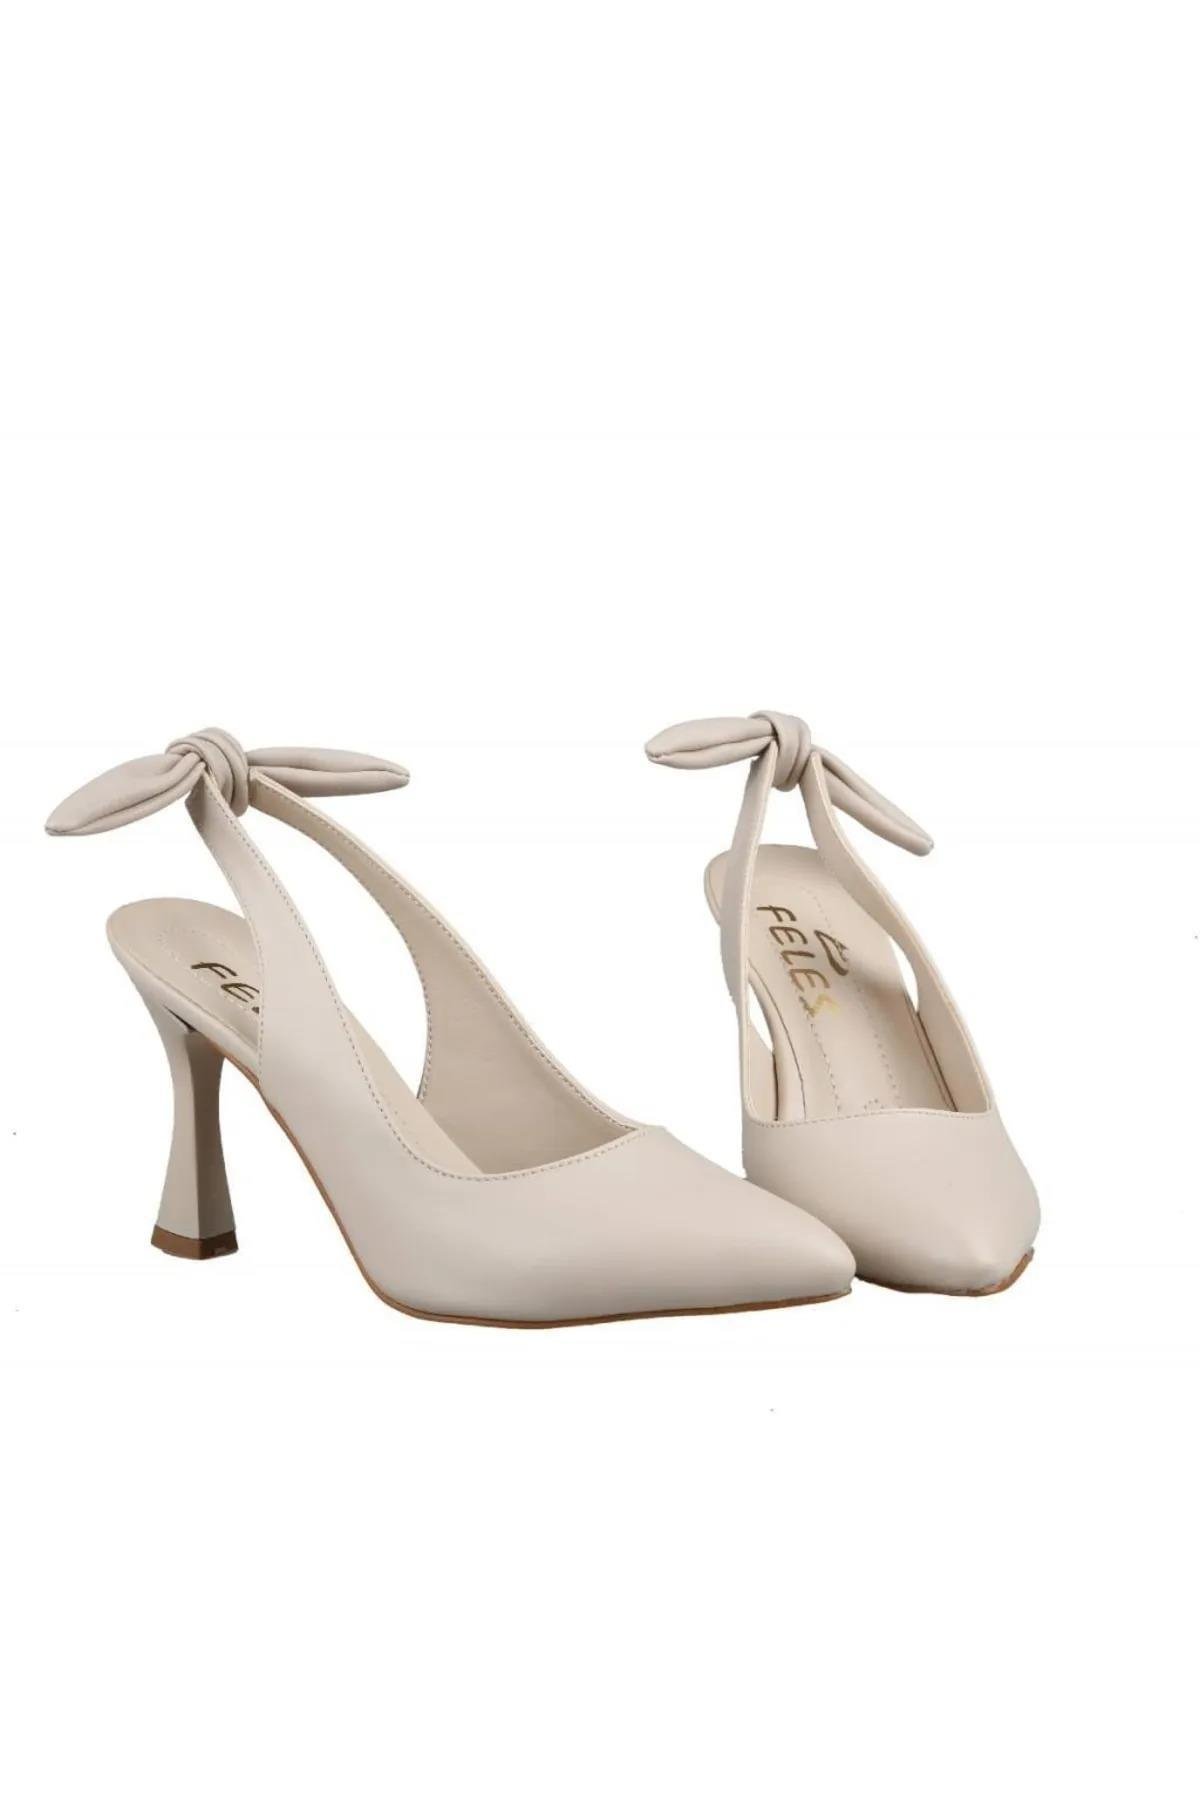 En şık ve trend açık bayan topuklu ayakkabılarına 'pabucland.com'  adresinden göz atabilirsin!